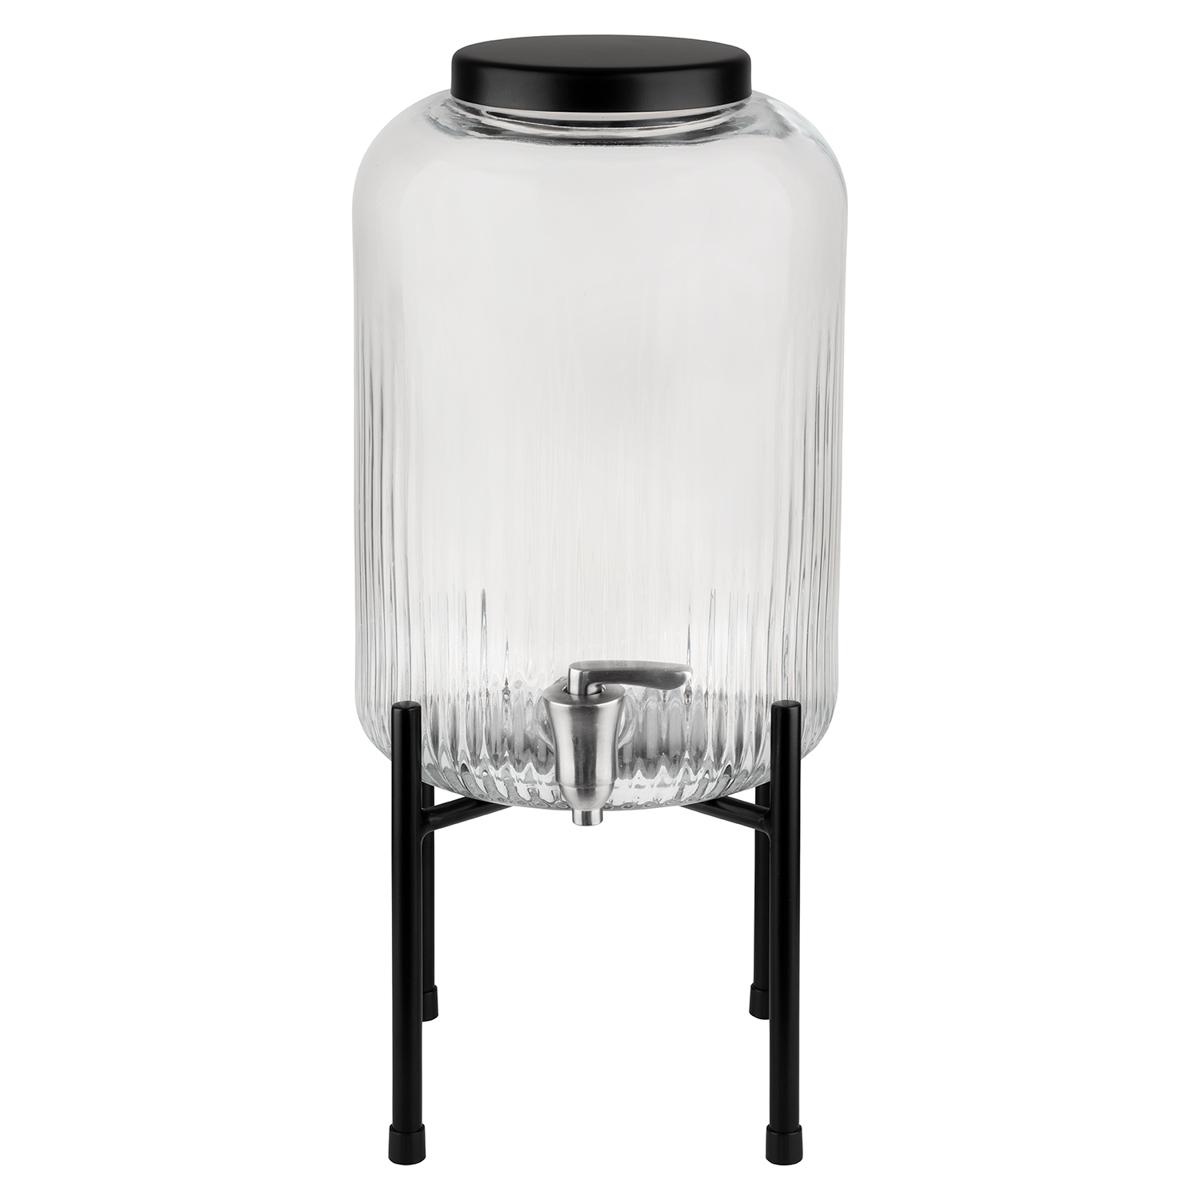 Getränkespender -INDUSTRIAL-, Ø 20 cm, H, 45 cm, Behälter Glas, Zapfhahn Edelstahl, Gestell Metall, Deckel aus Edelstahl, 7 Liter